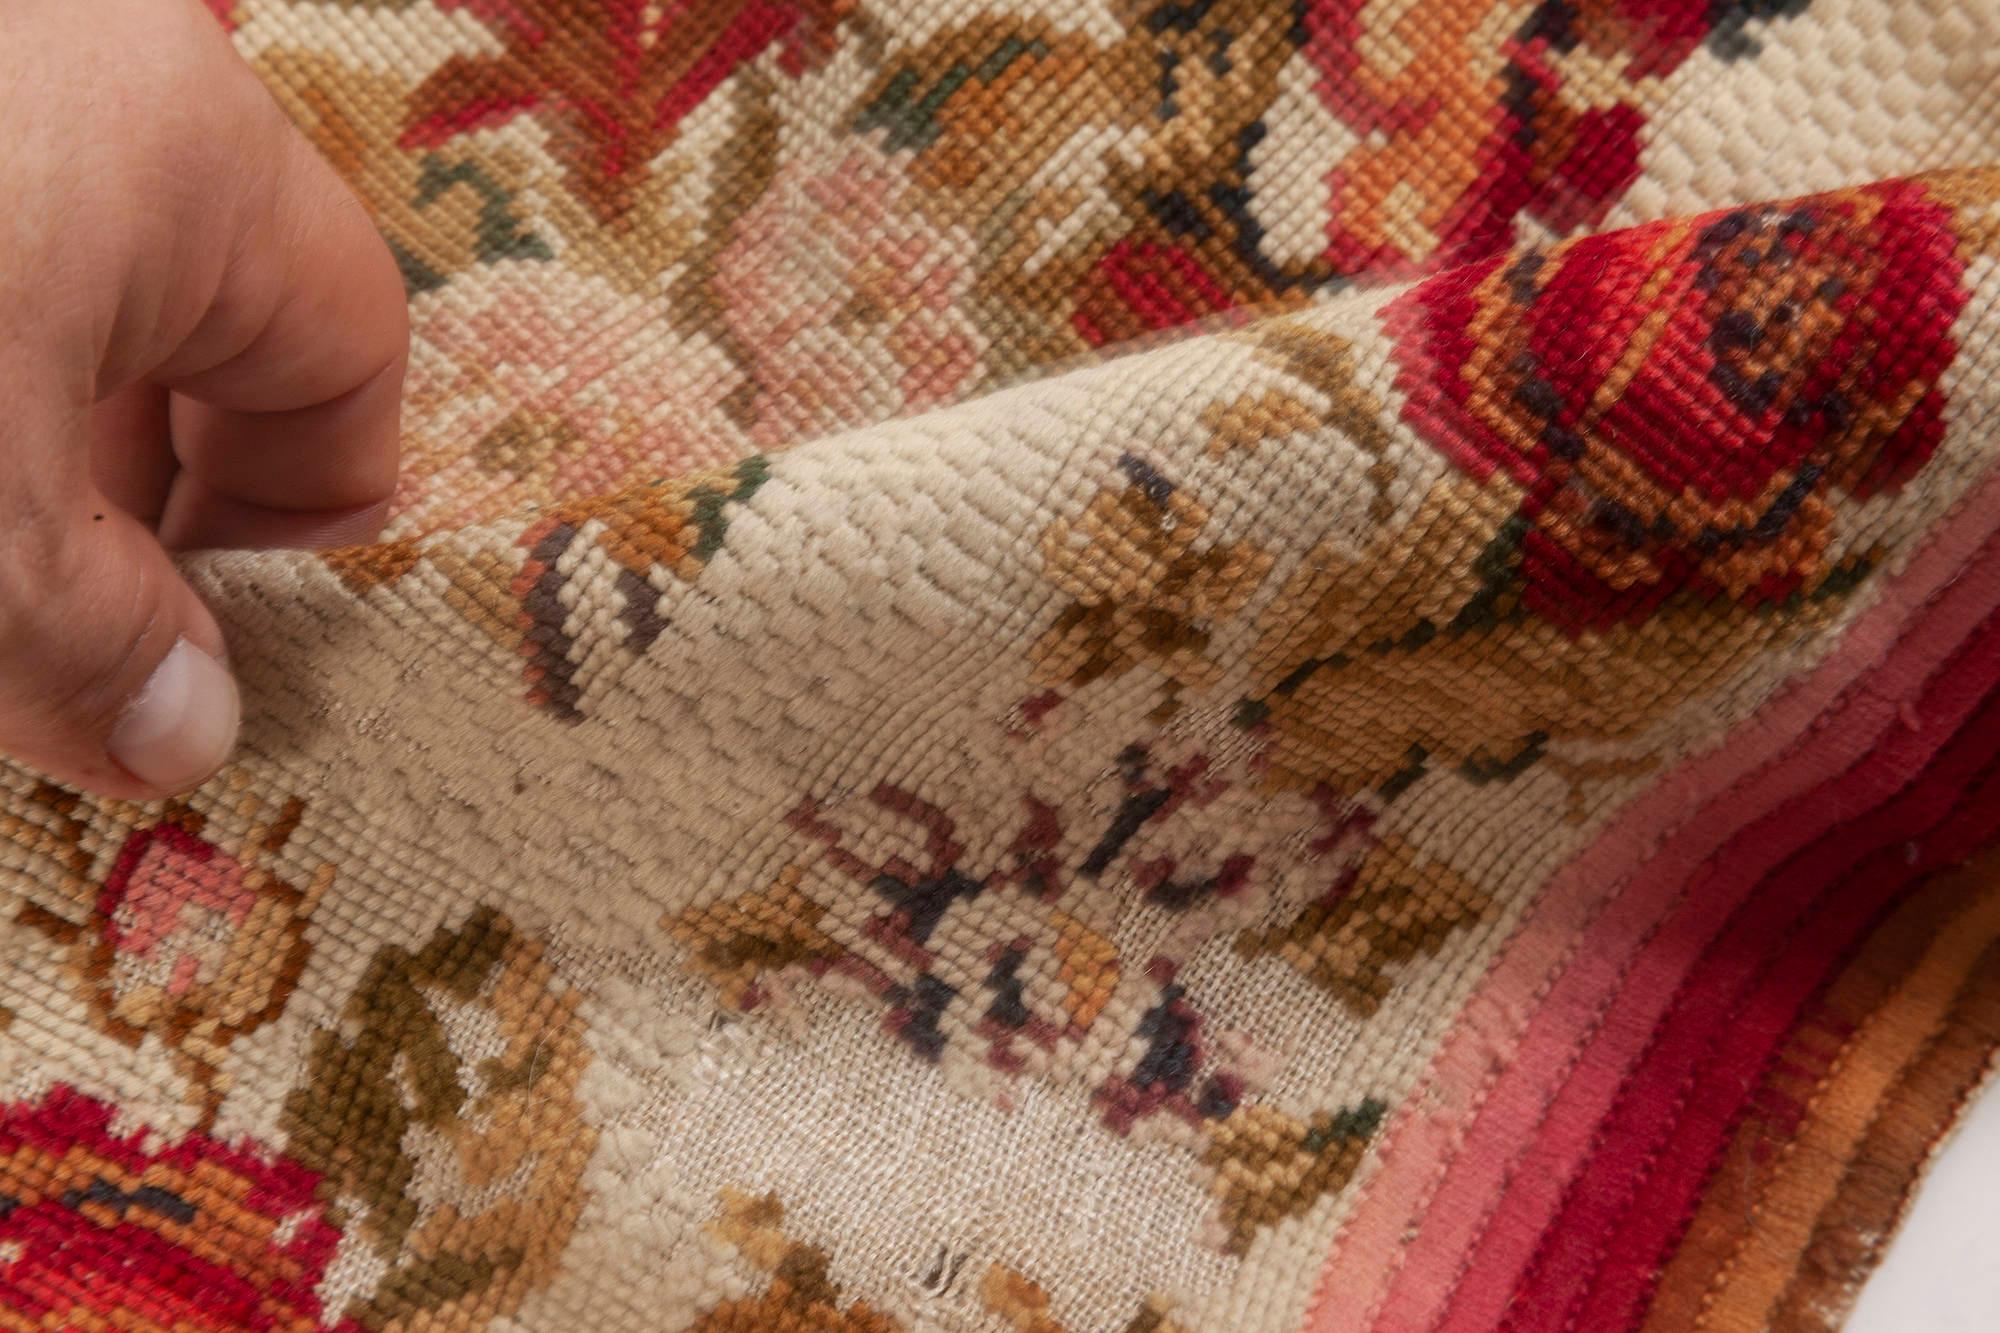 Early 20th century English needlework rug
Size: 2'10